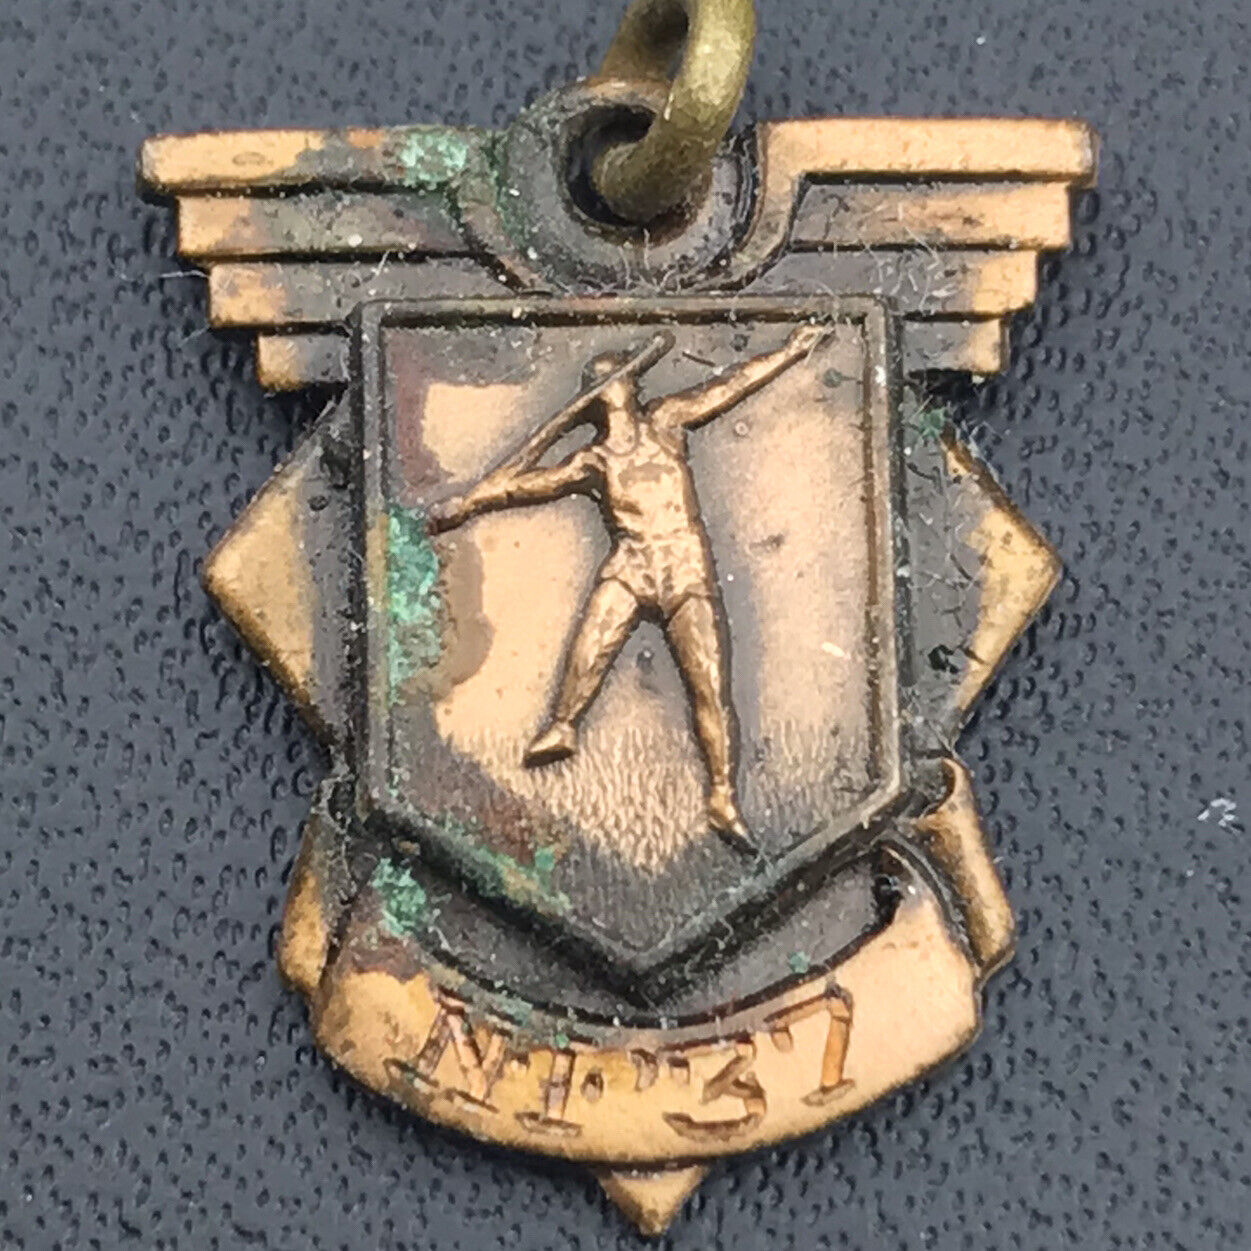 Javelin Throw 1937 Award School Vintage Medal Pendant By Jostens